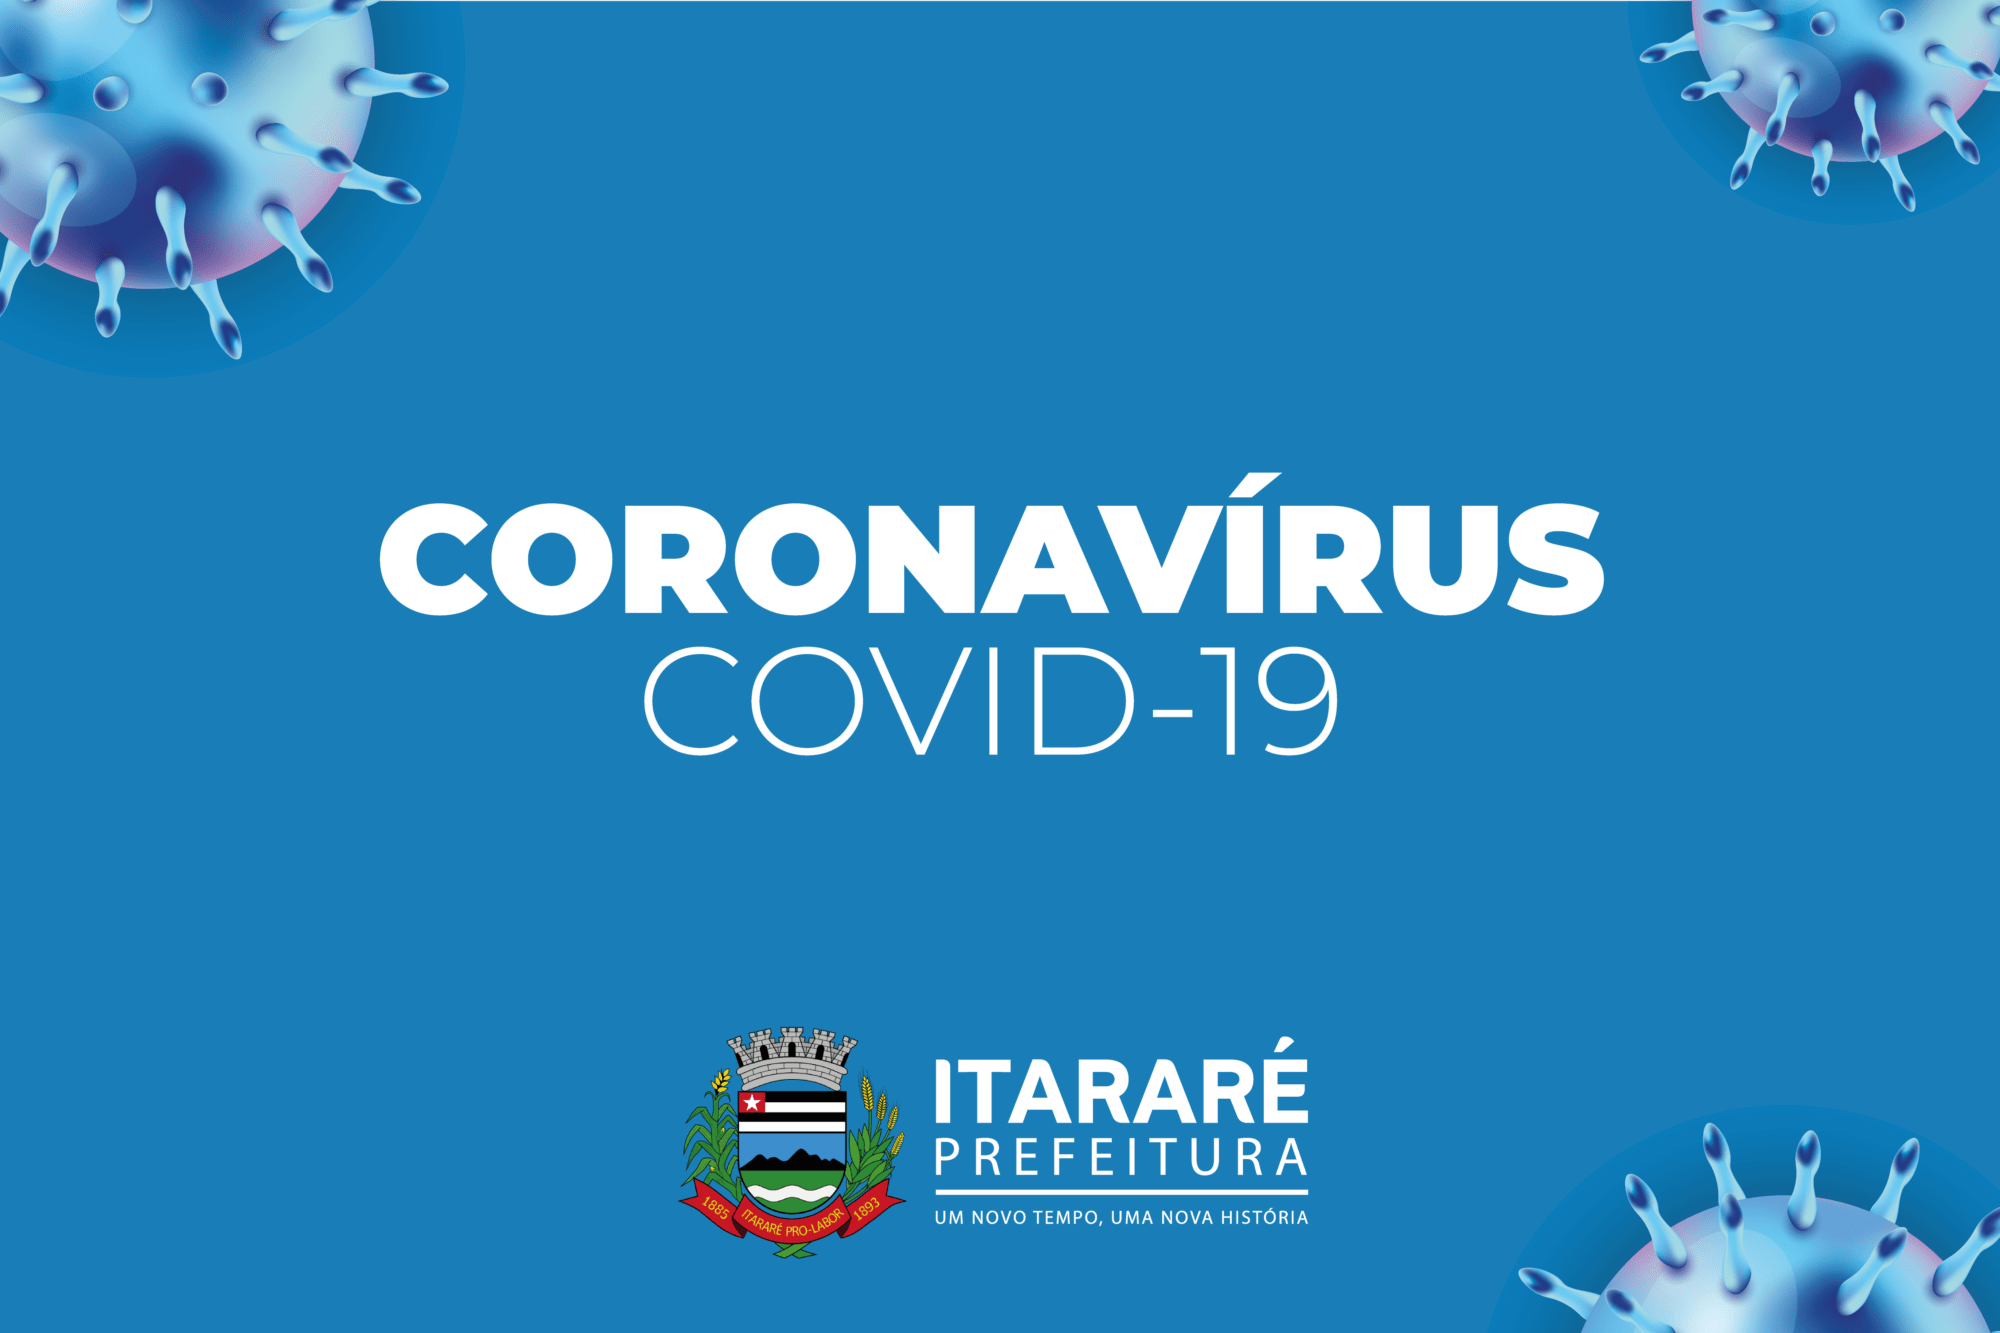 Coronavírus: Prefeitura de Itararé (SP) determina o fechamento de bancos e lotéricas como medida de prevenção ao COVID-19